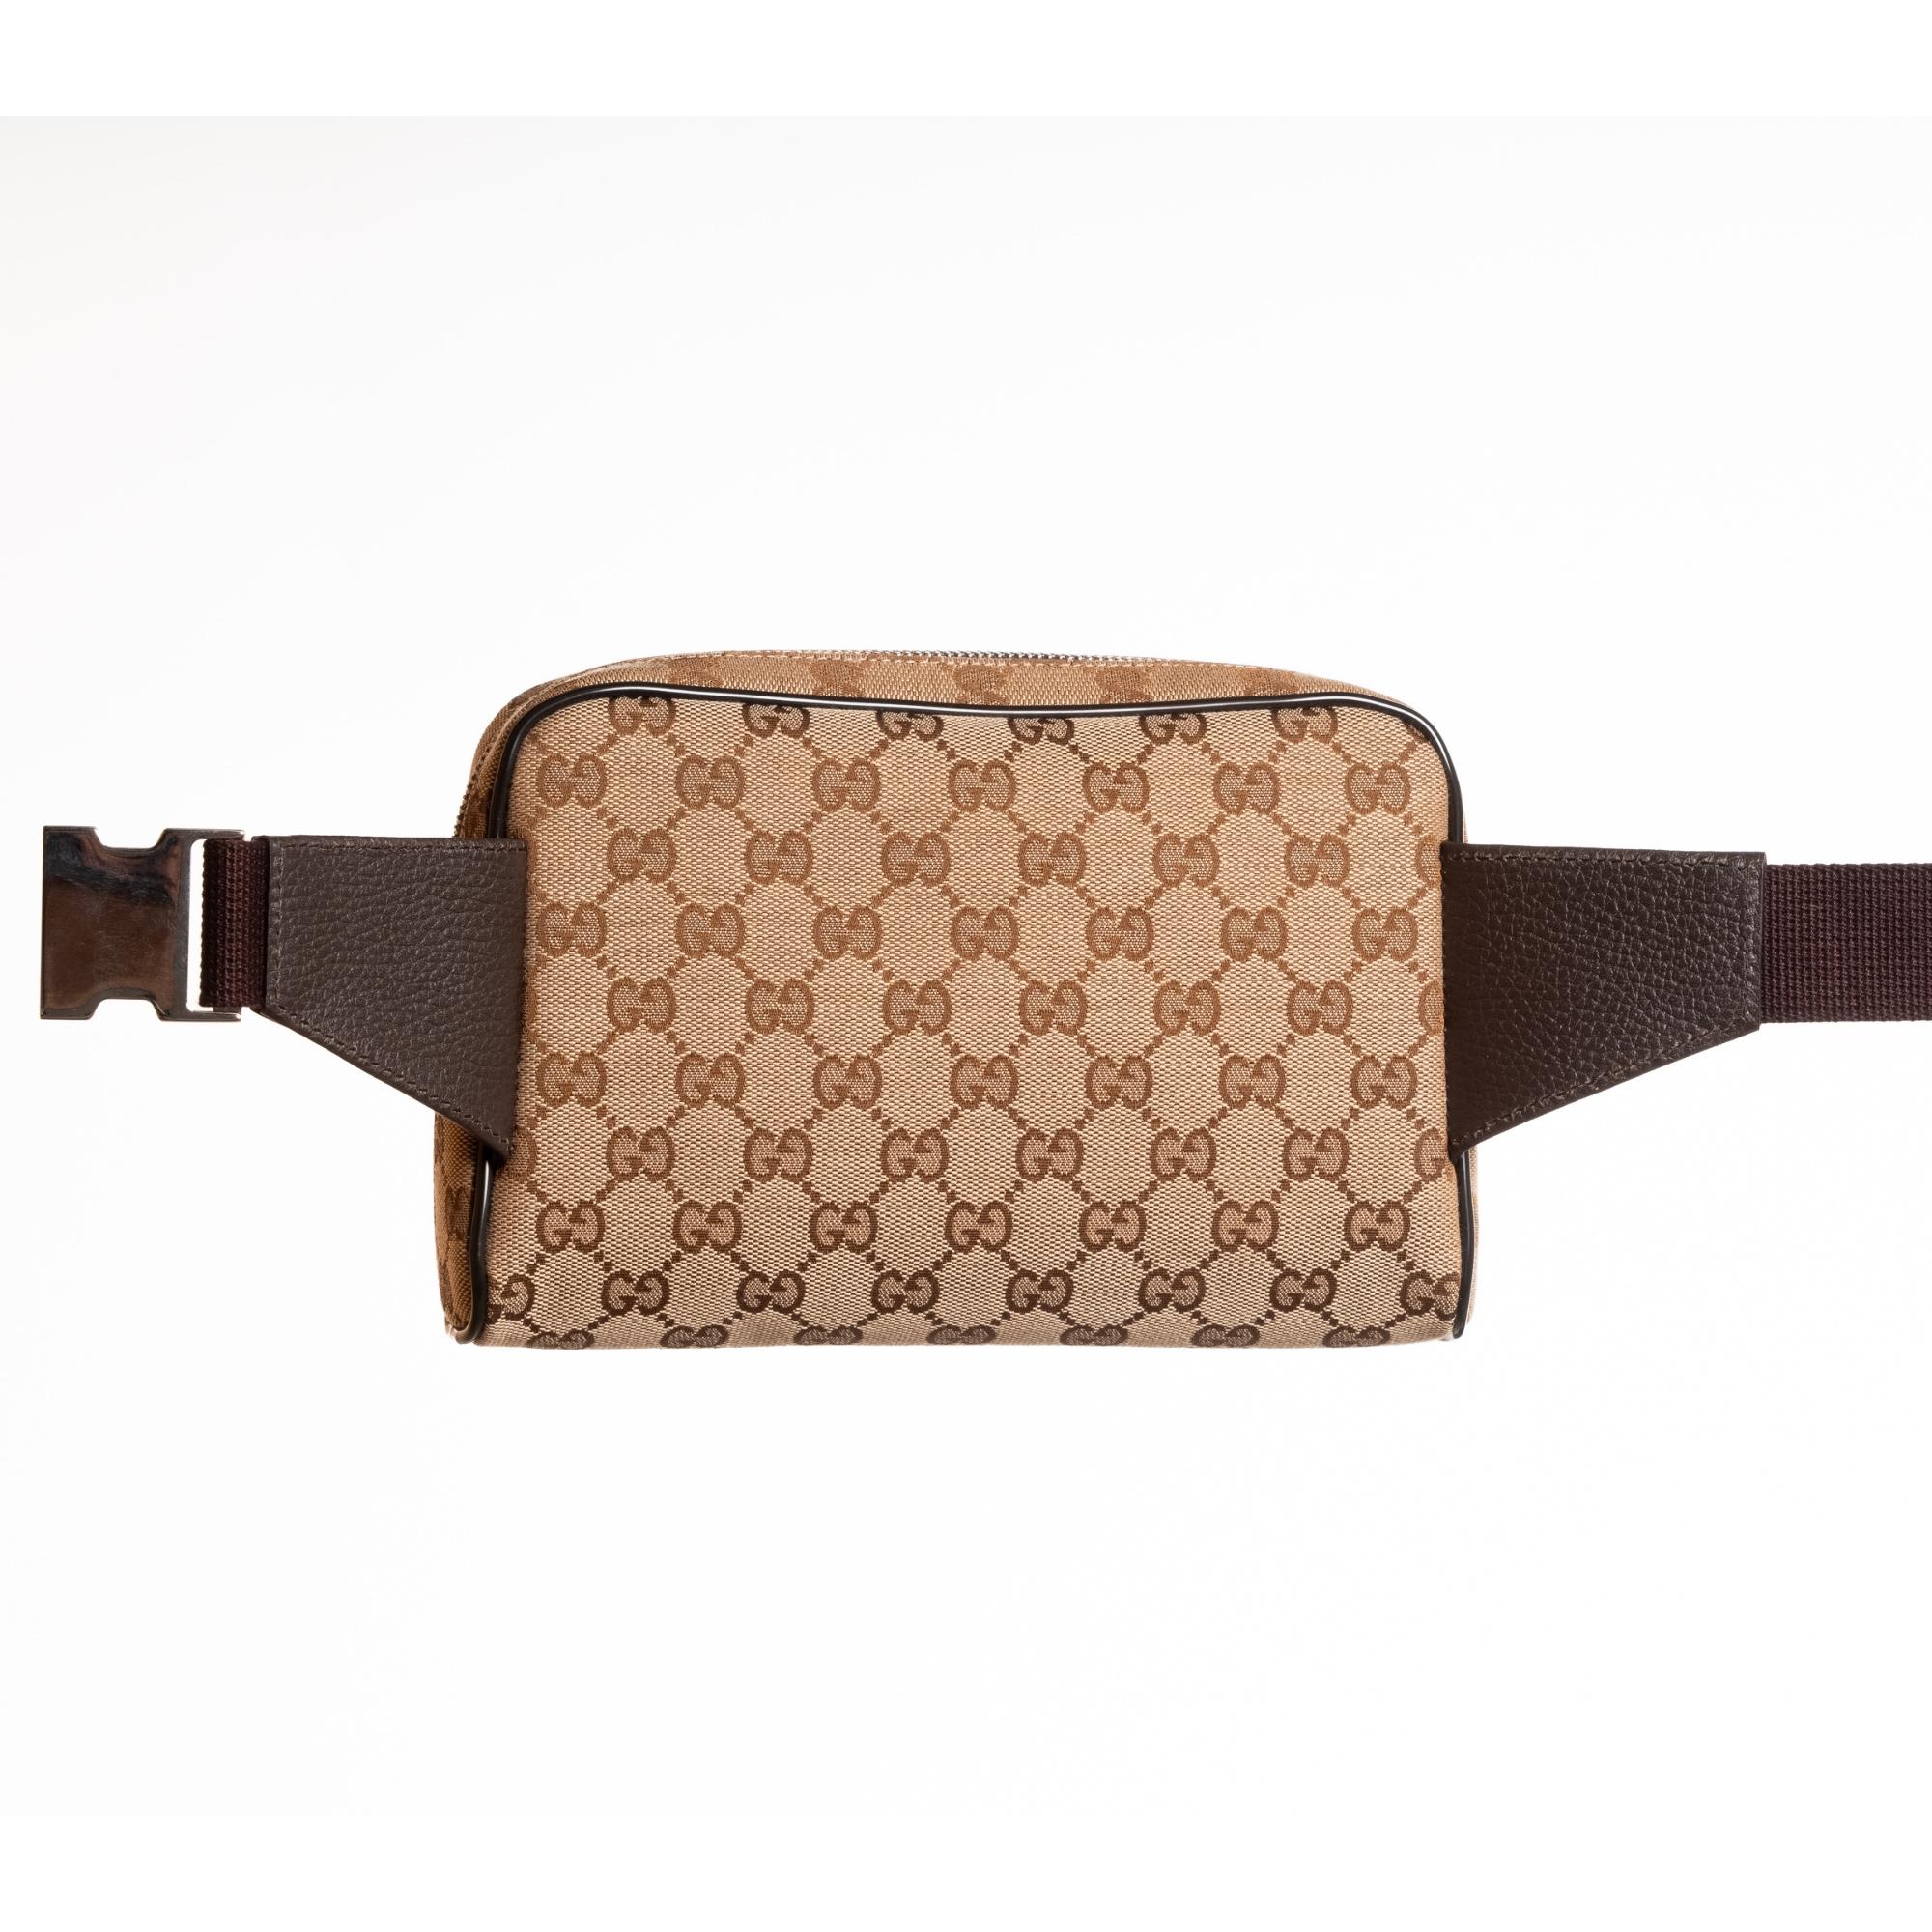 Ce sac ceinture classique de Gucci en toile monogramme ébène/beige est réalisé en toile avec des finitions en cuir. Le sac présente l'impression classique du monogramme, des piqûres en cuir marron contrastant, une fermeture à glissière sur le